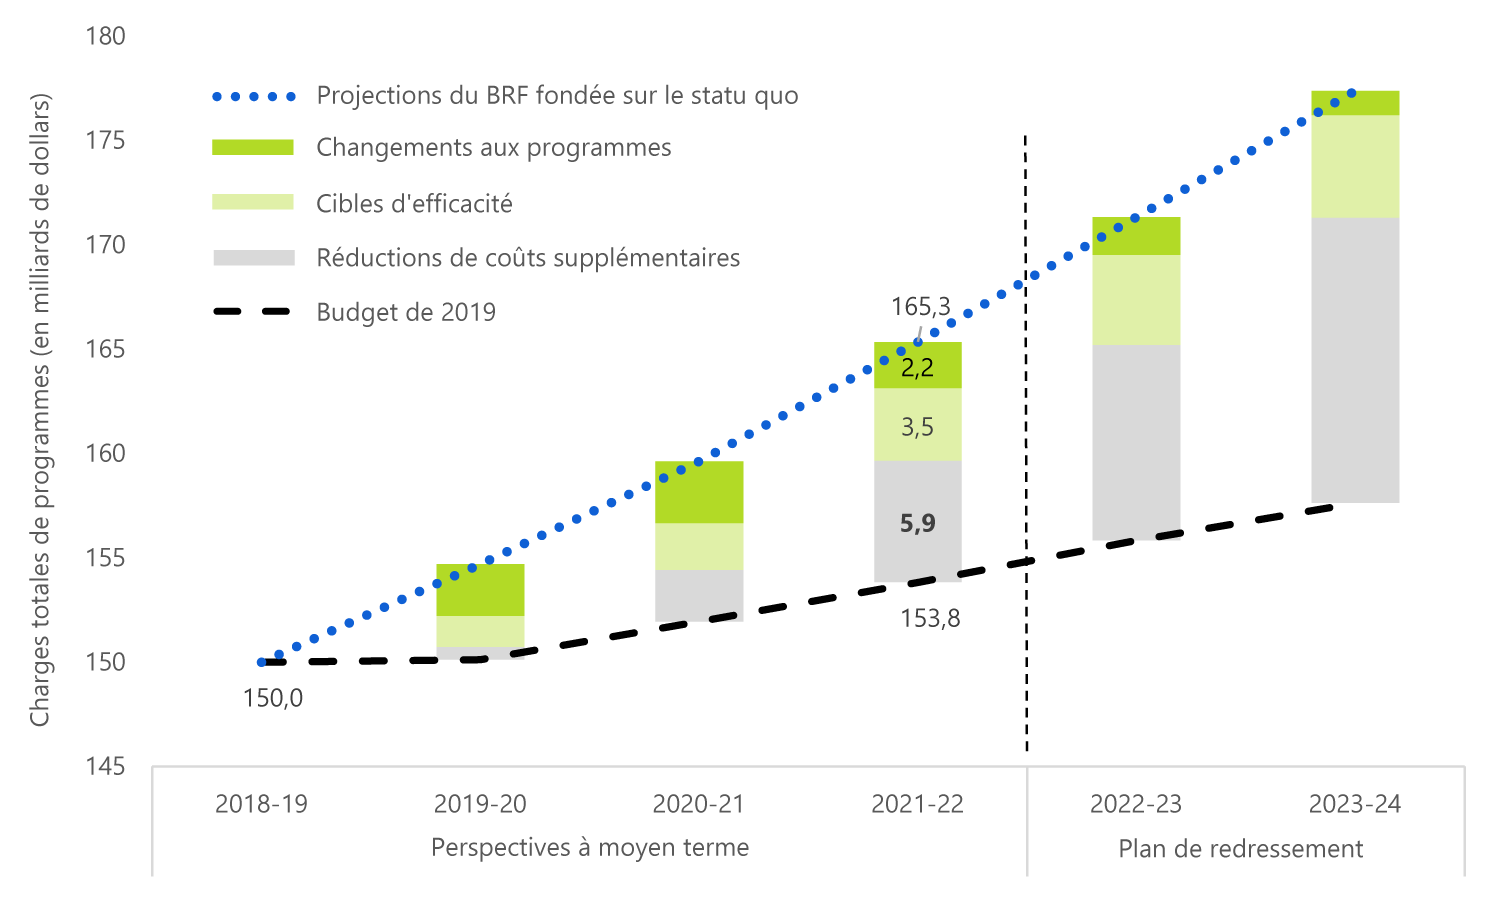 D'ici 2021-2022, les changements aux programmes et les cibles d'efficacité prévus dans le budget de 2019 représenteront environ la moitié des réductions des coûts totaux nécessaires pour que le gouvernement réalise les économies de coûts prévues